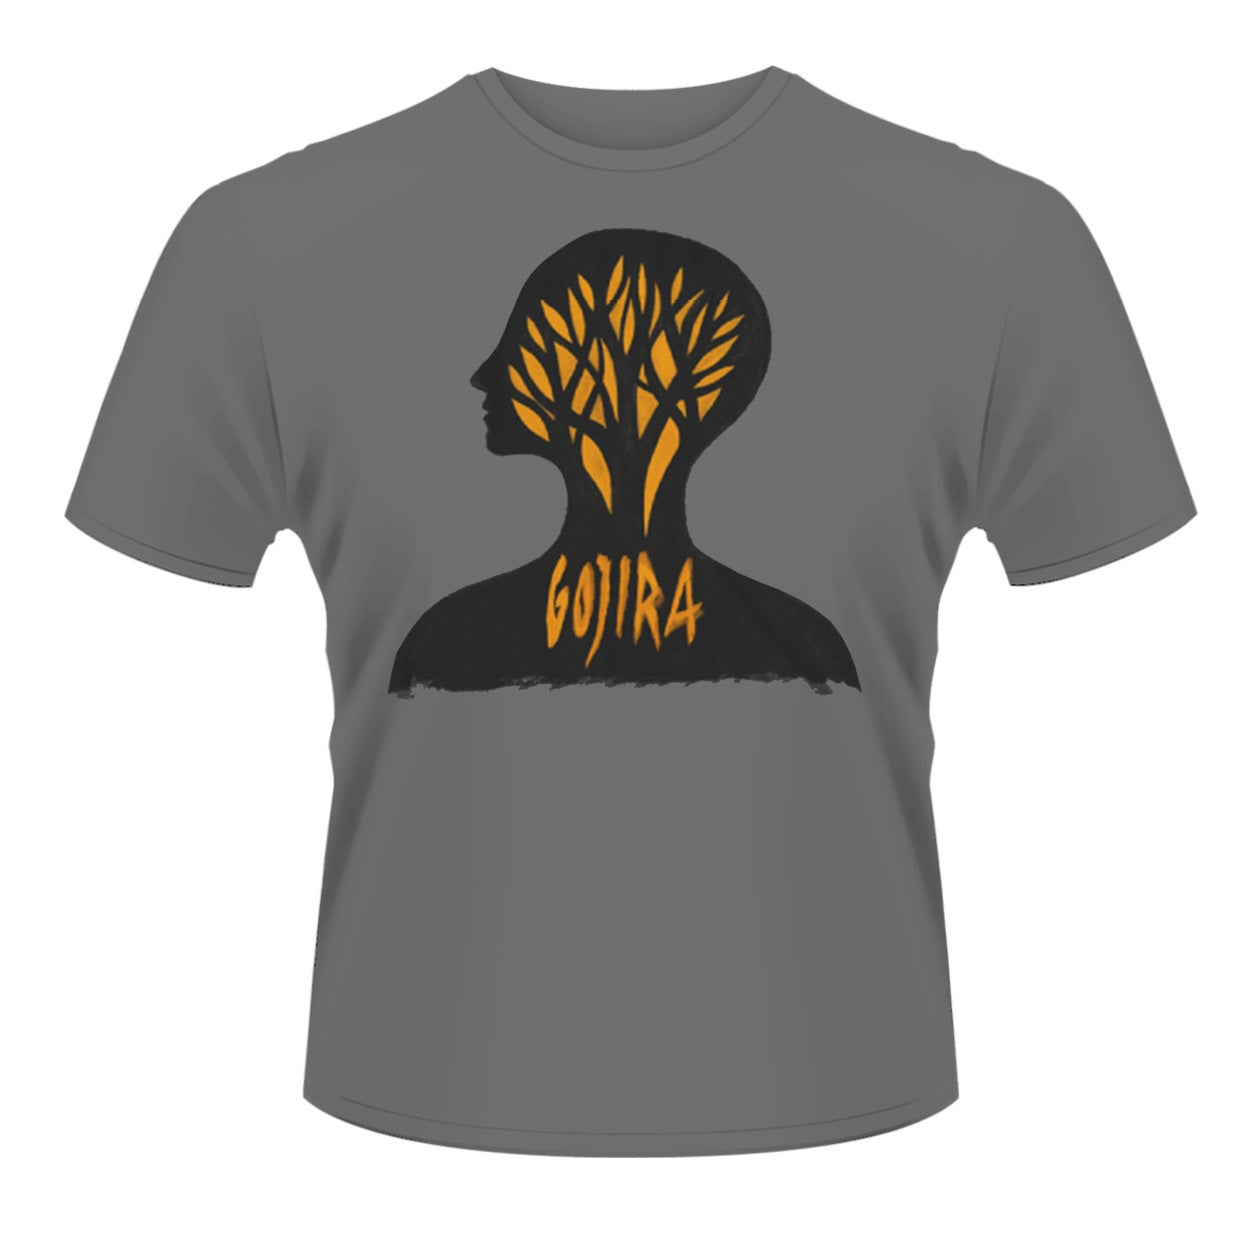 Gojira "Headcase" Organic T shirt